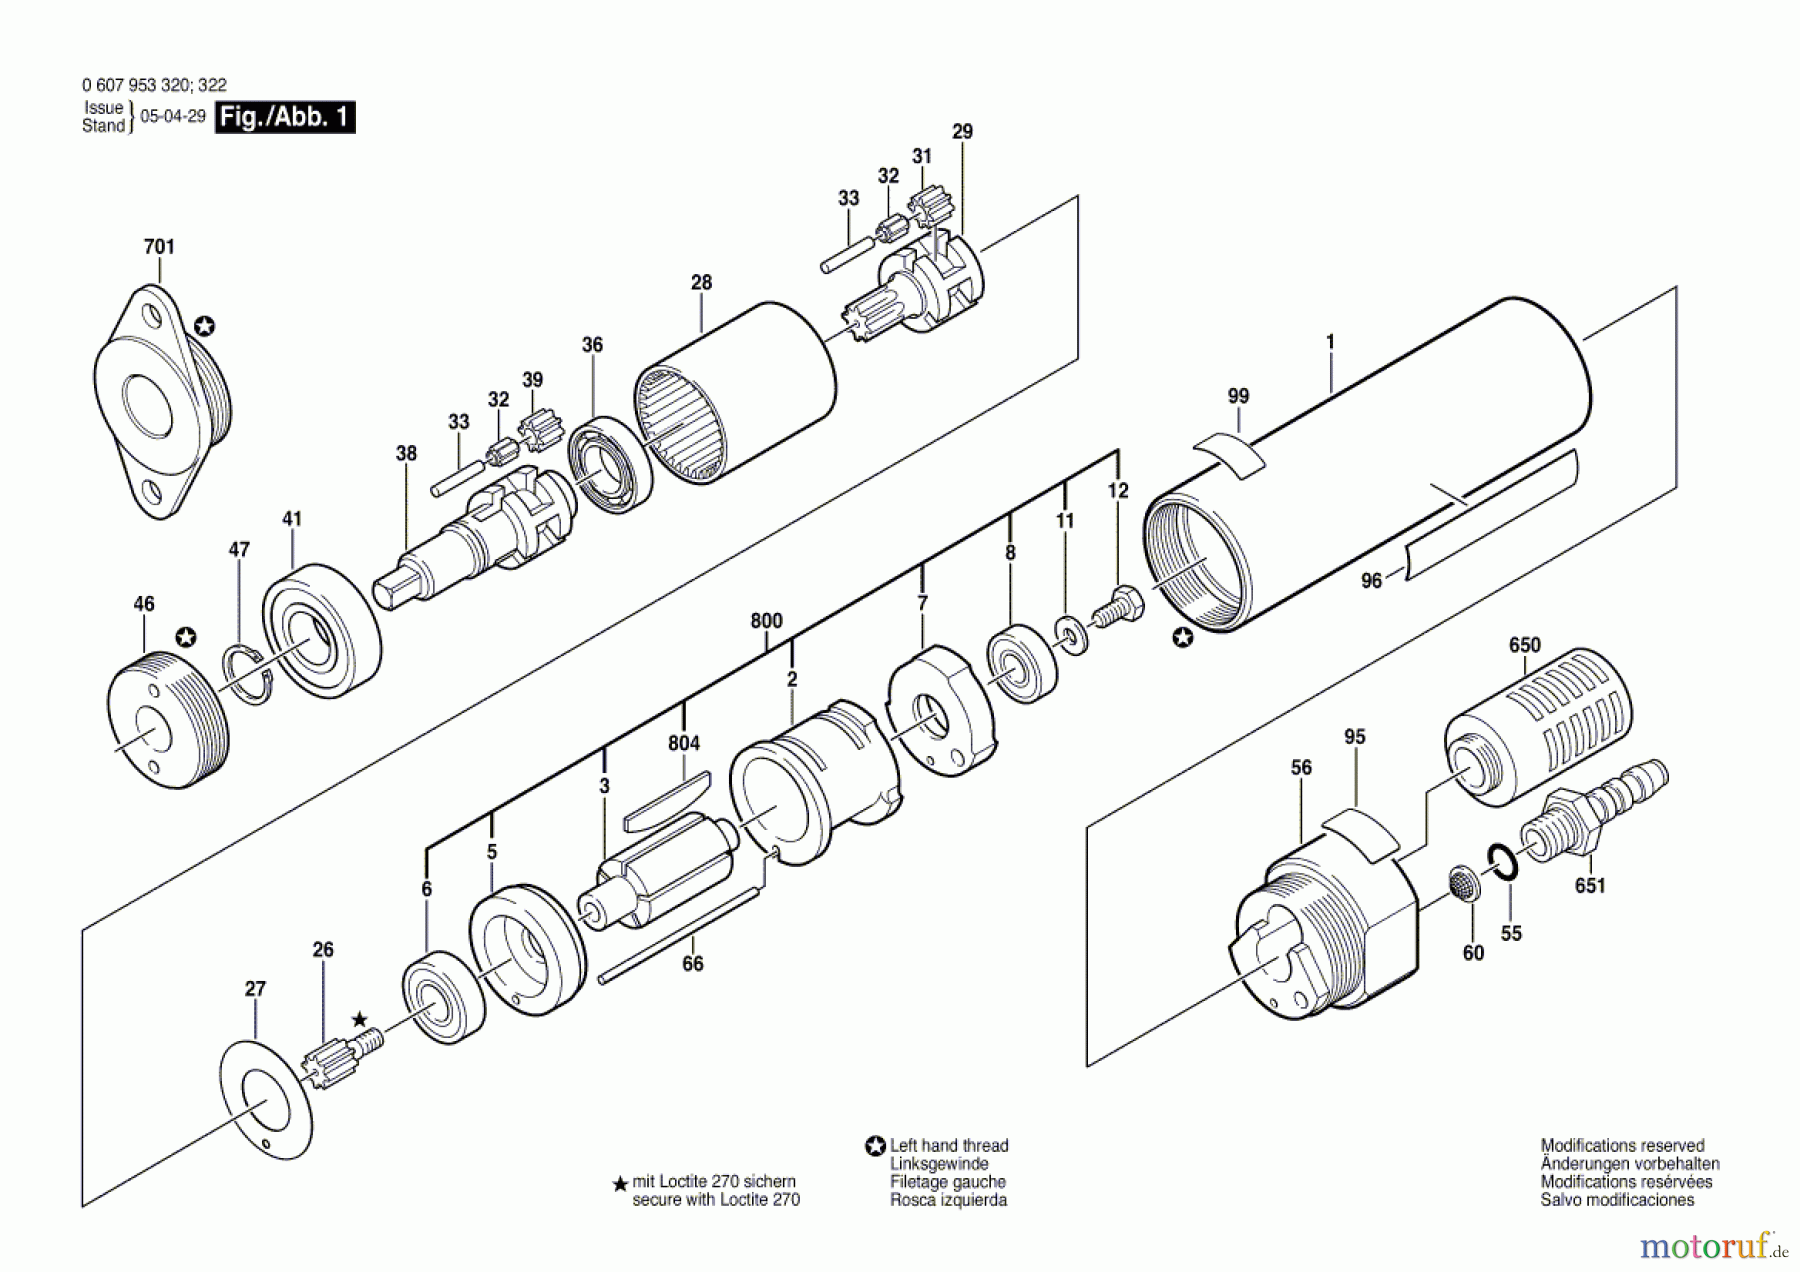  Bosch Werkzeug Einbaumotor 180 WATT-SERIE Seite 1